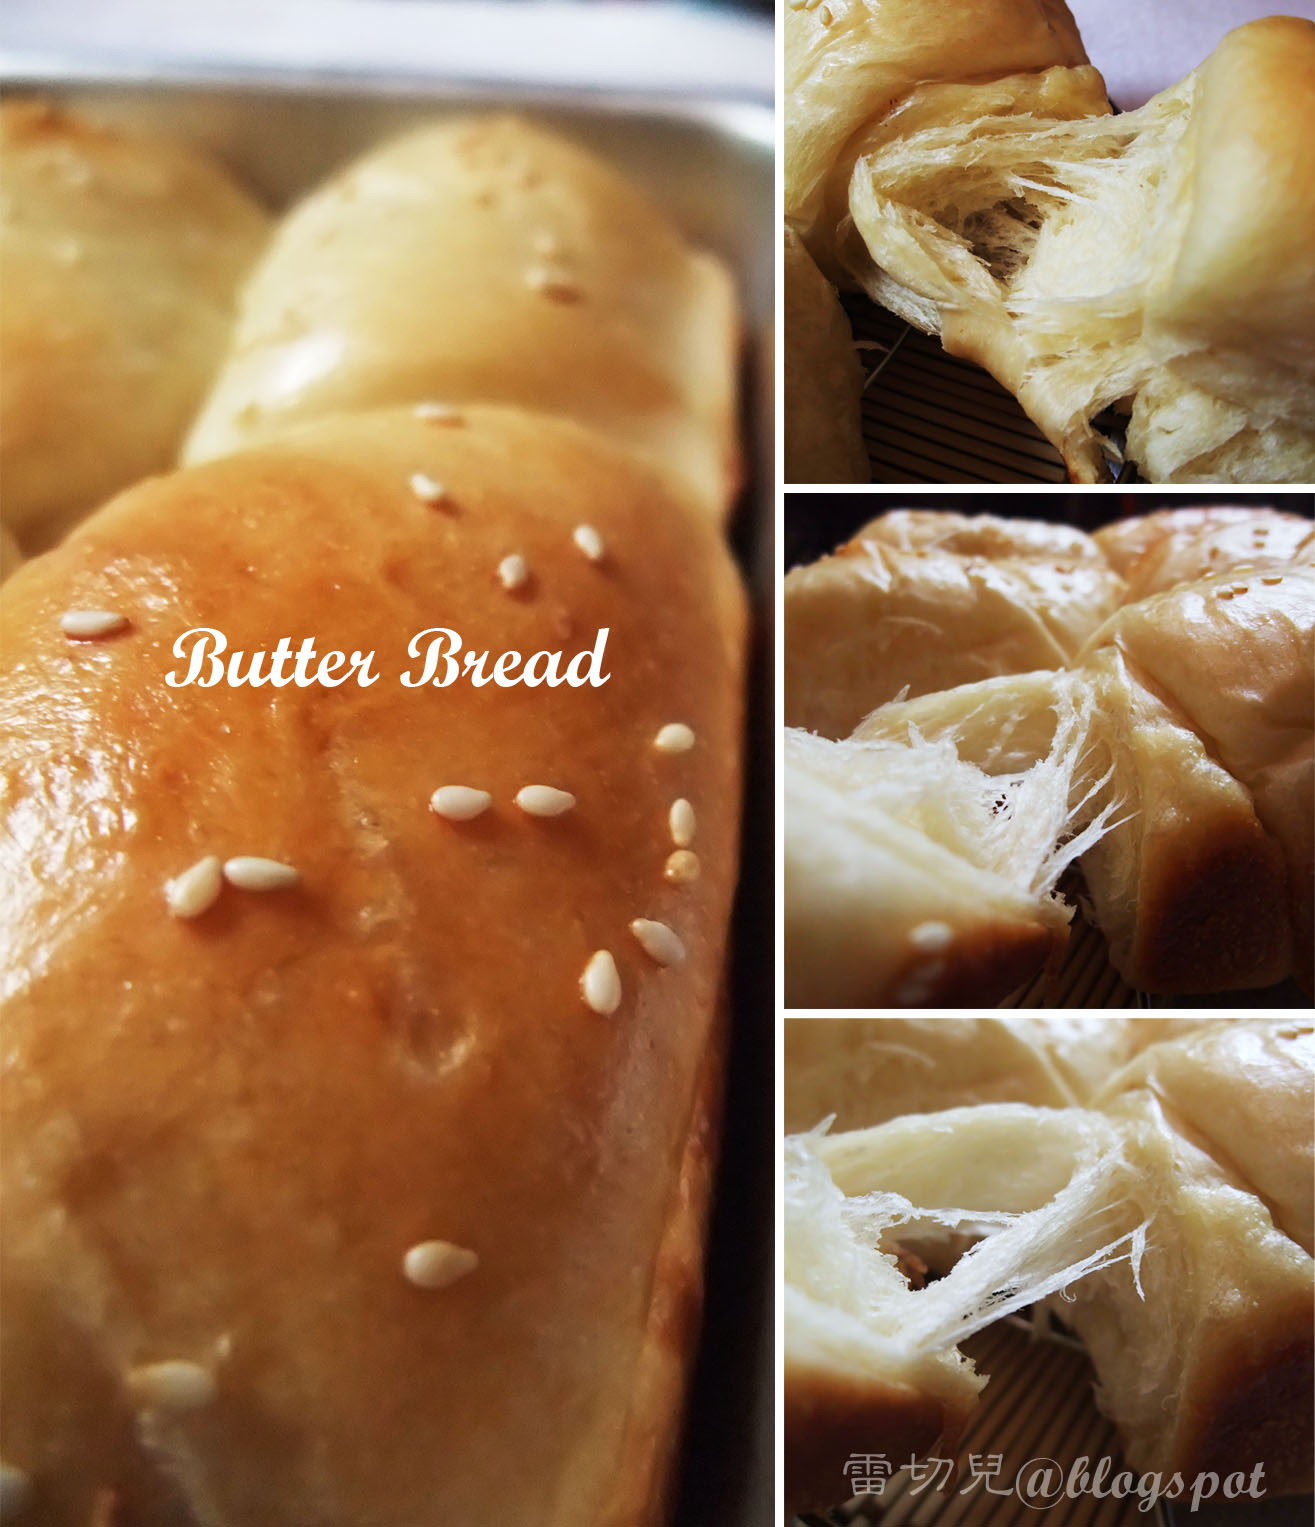 爱厨房的幸福之味: 传统粗糖牛油面包（直接法） Traditional Sugar & Butter Bread